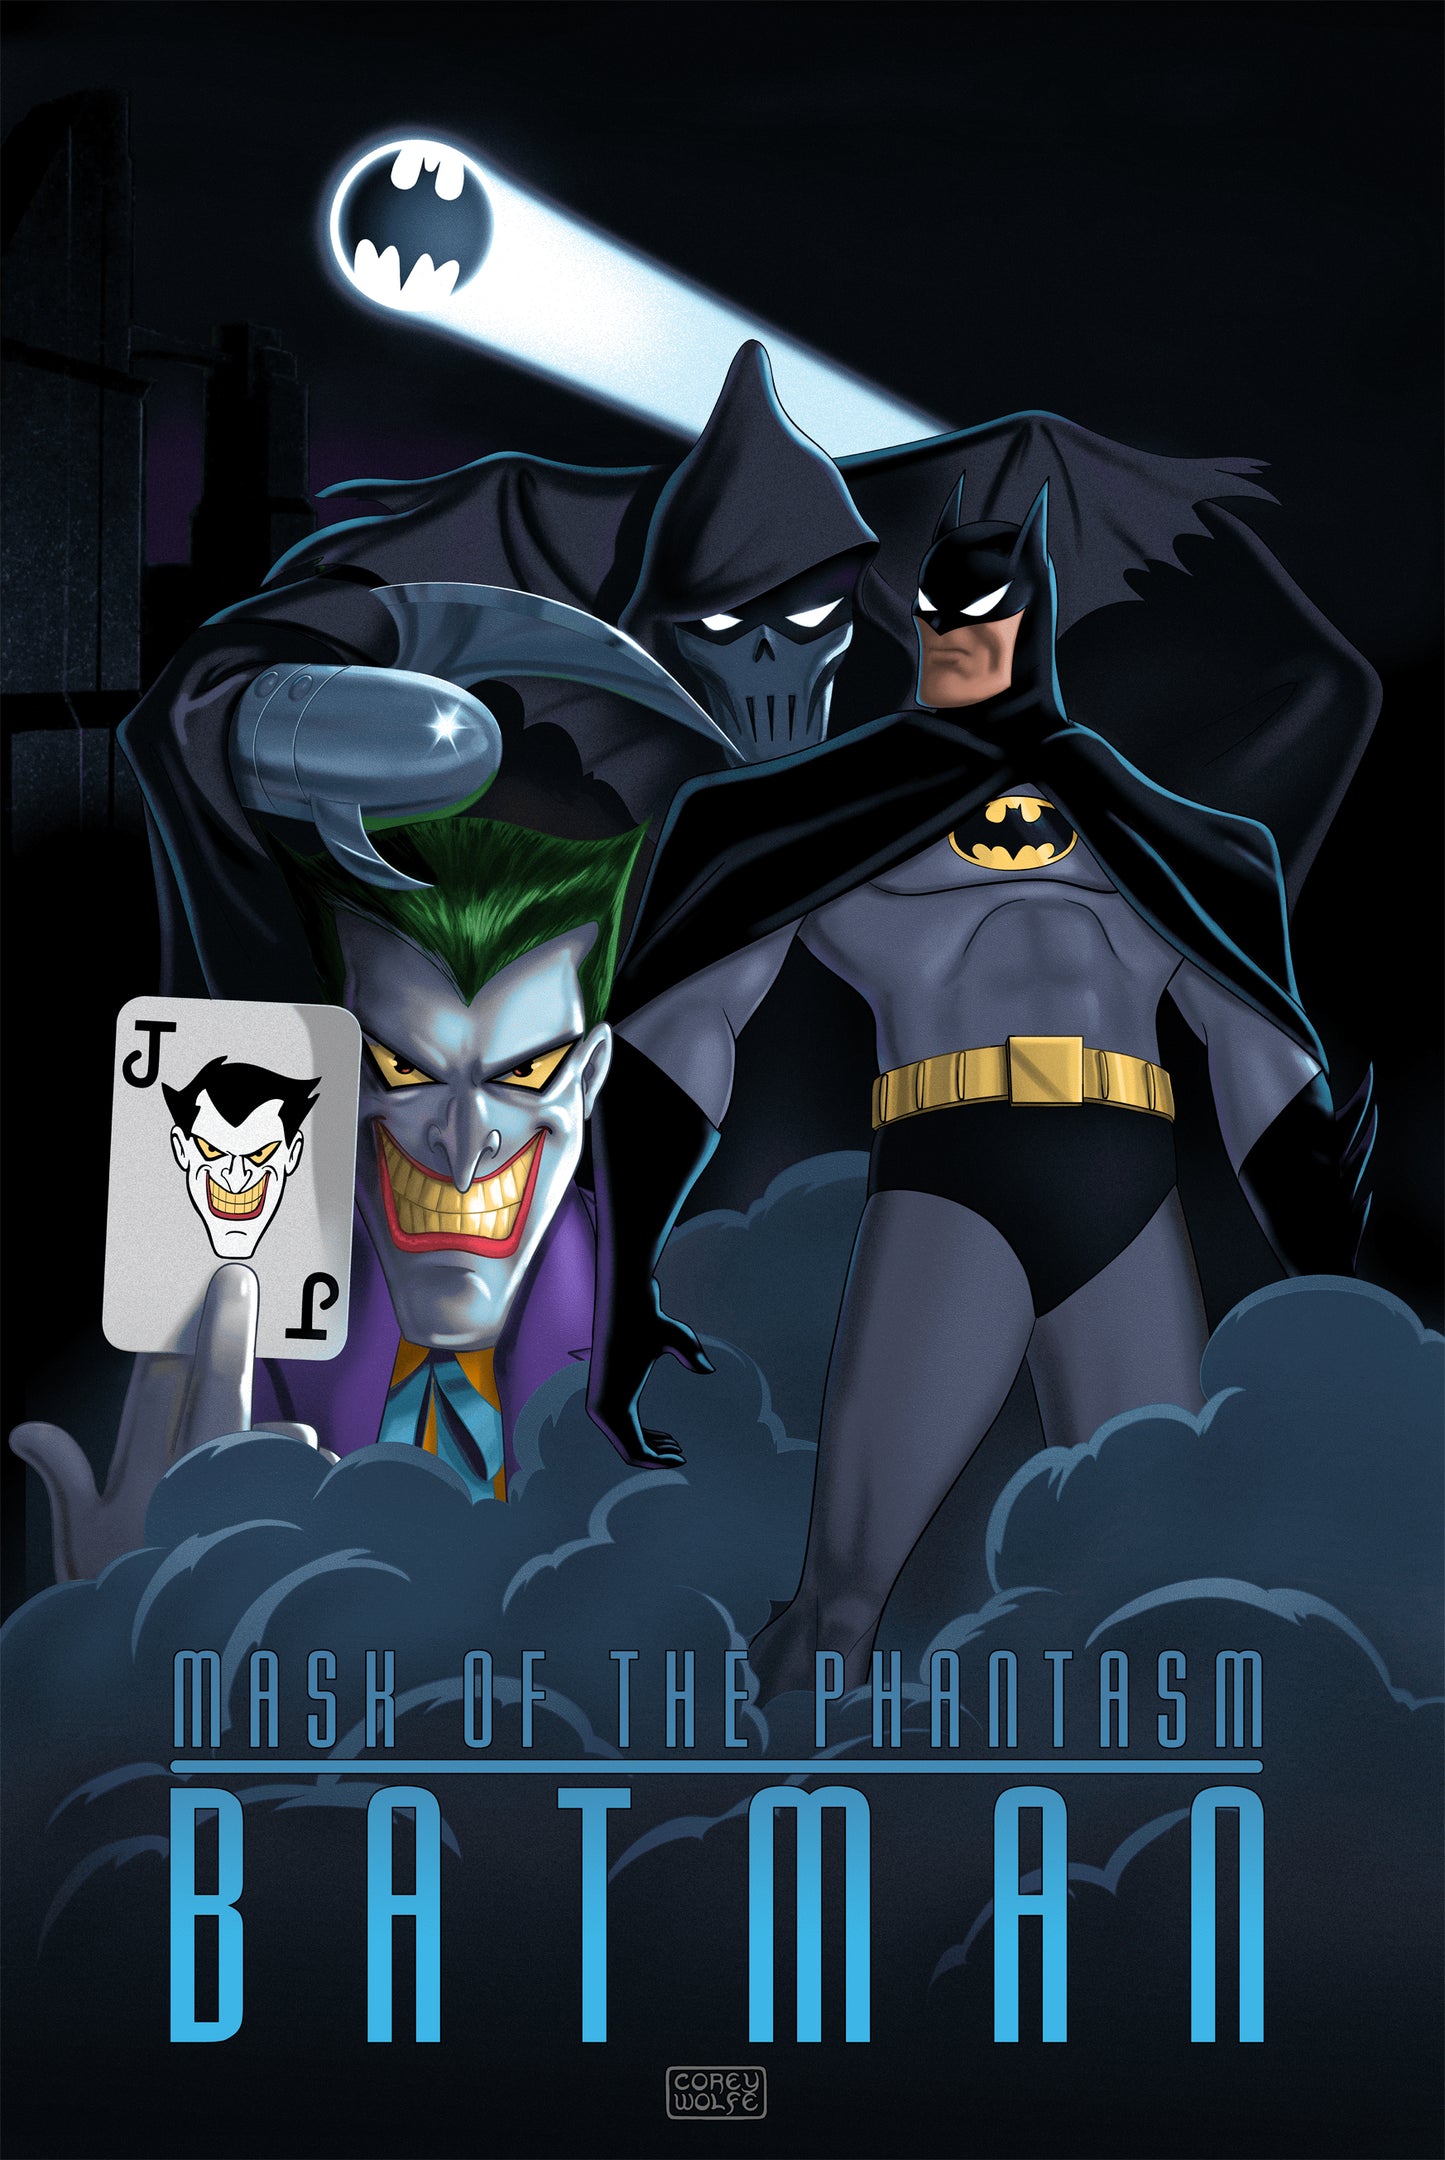 Corey Wolfe "Batman: Mask of the Phantasm"